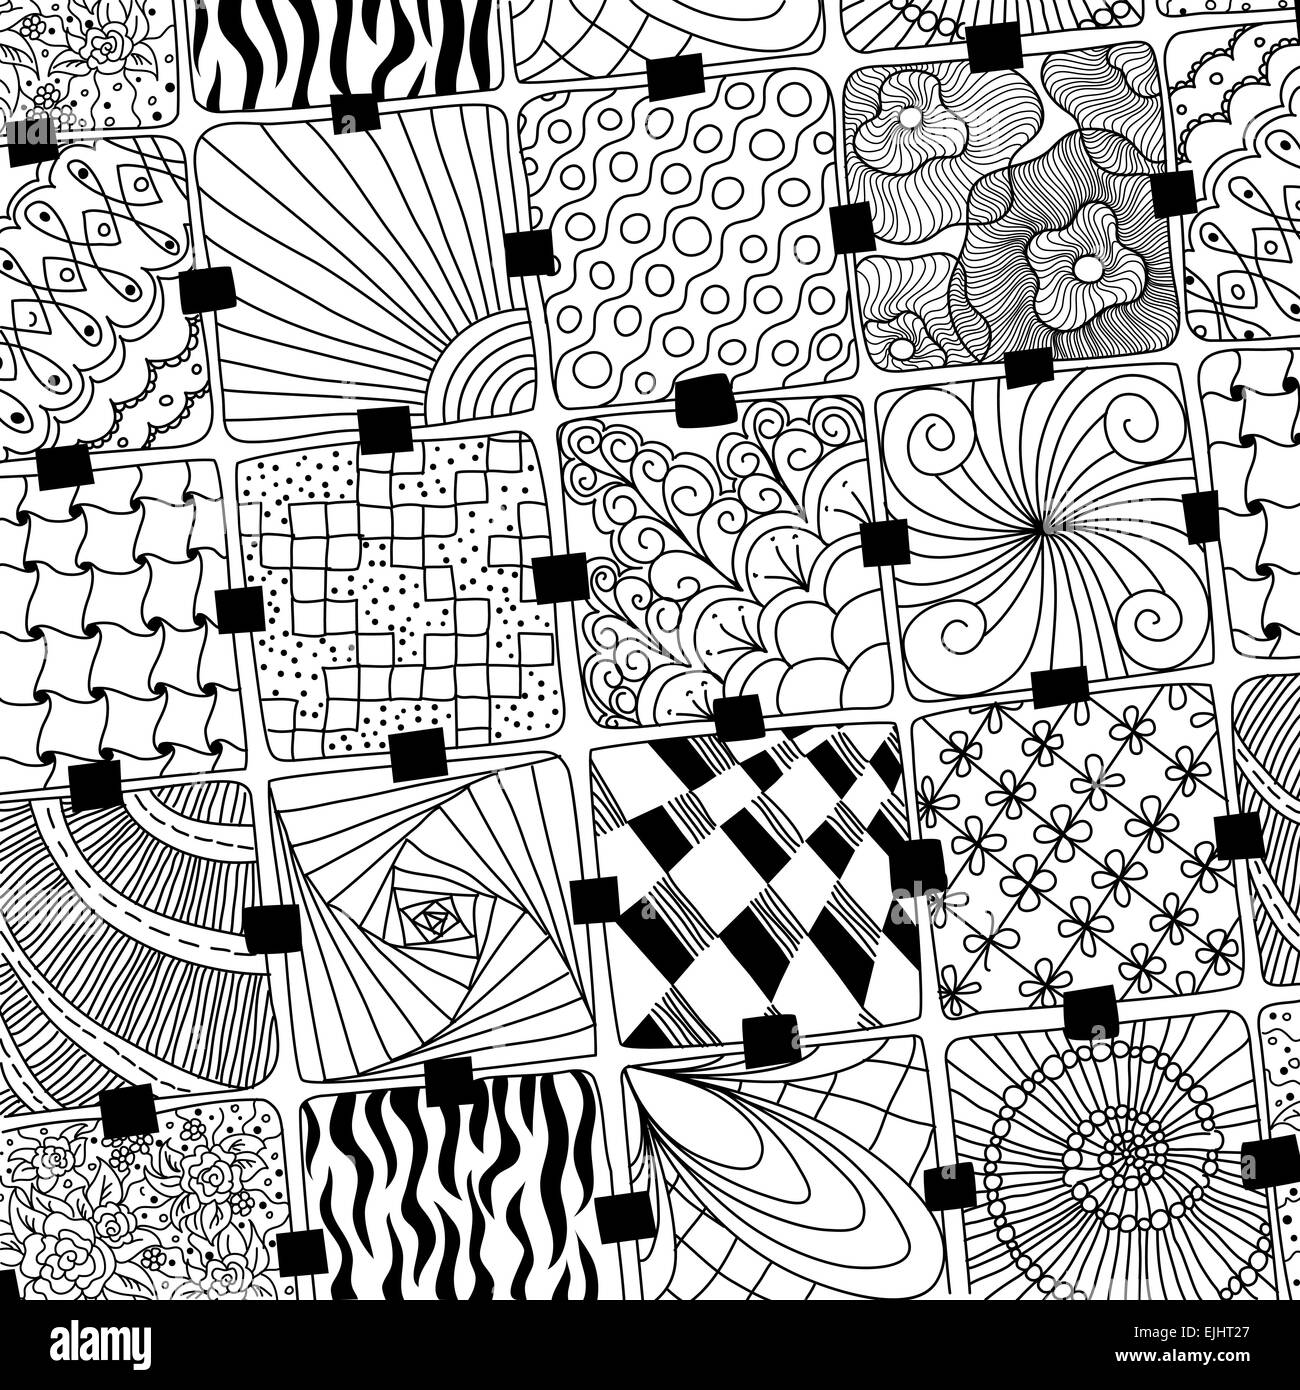 Doodles vecteur zentangle pattern Banque D'Images